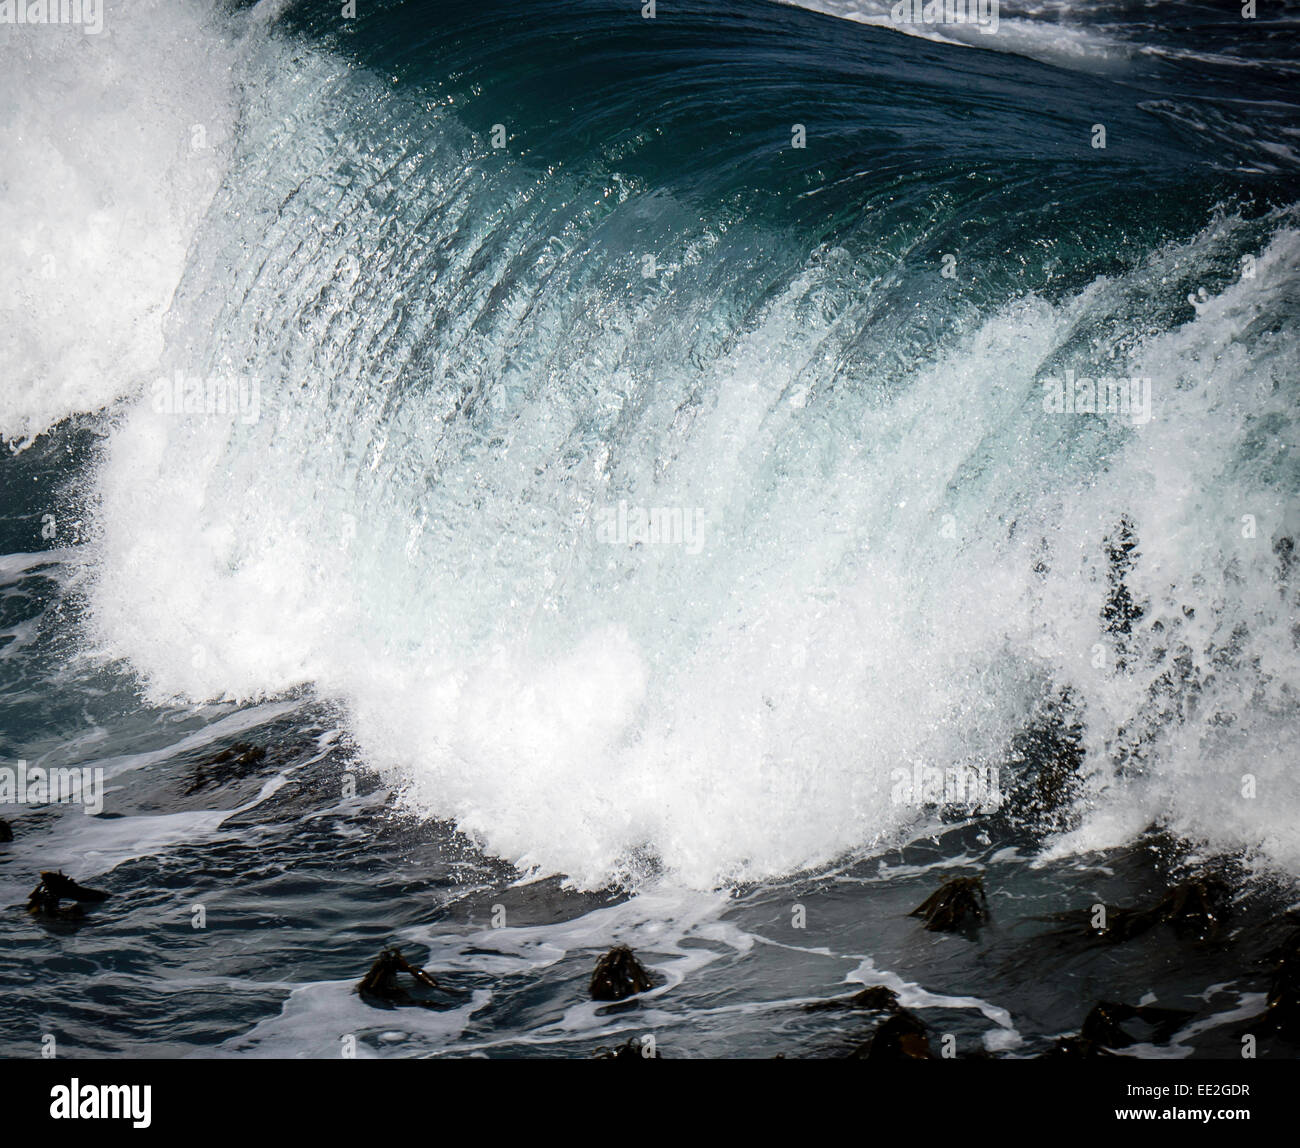 Un rouleau de l'Atlantique Sud en rupture vague Hermanus, Western Cape, Afrique du Sud. Hermanus est célèbre pour l'observation des baleines. Banque D'Images